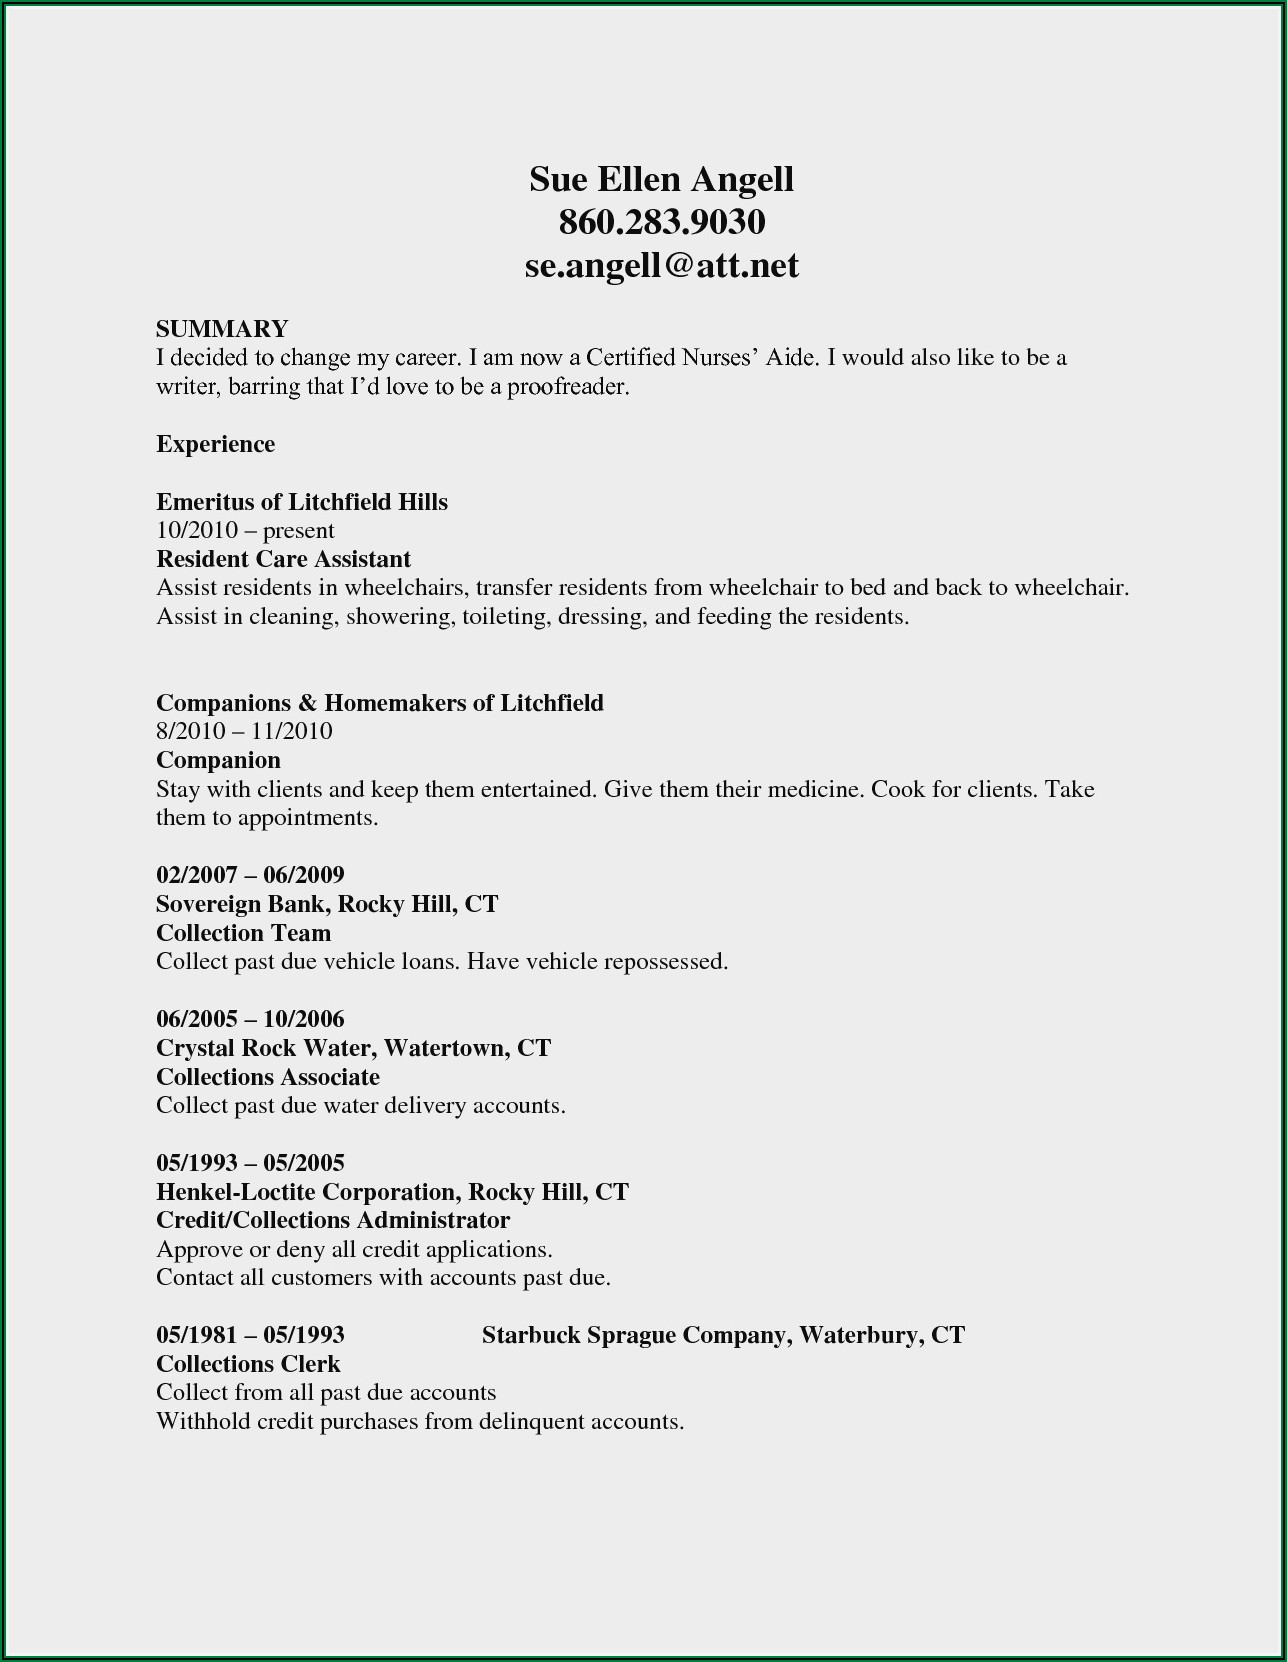 Resume Sample For Certified Nursing Assistant